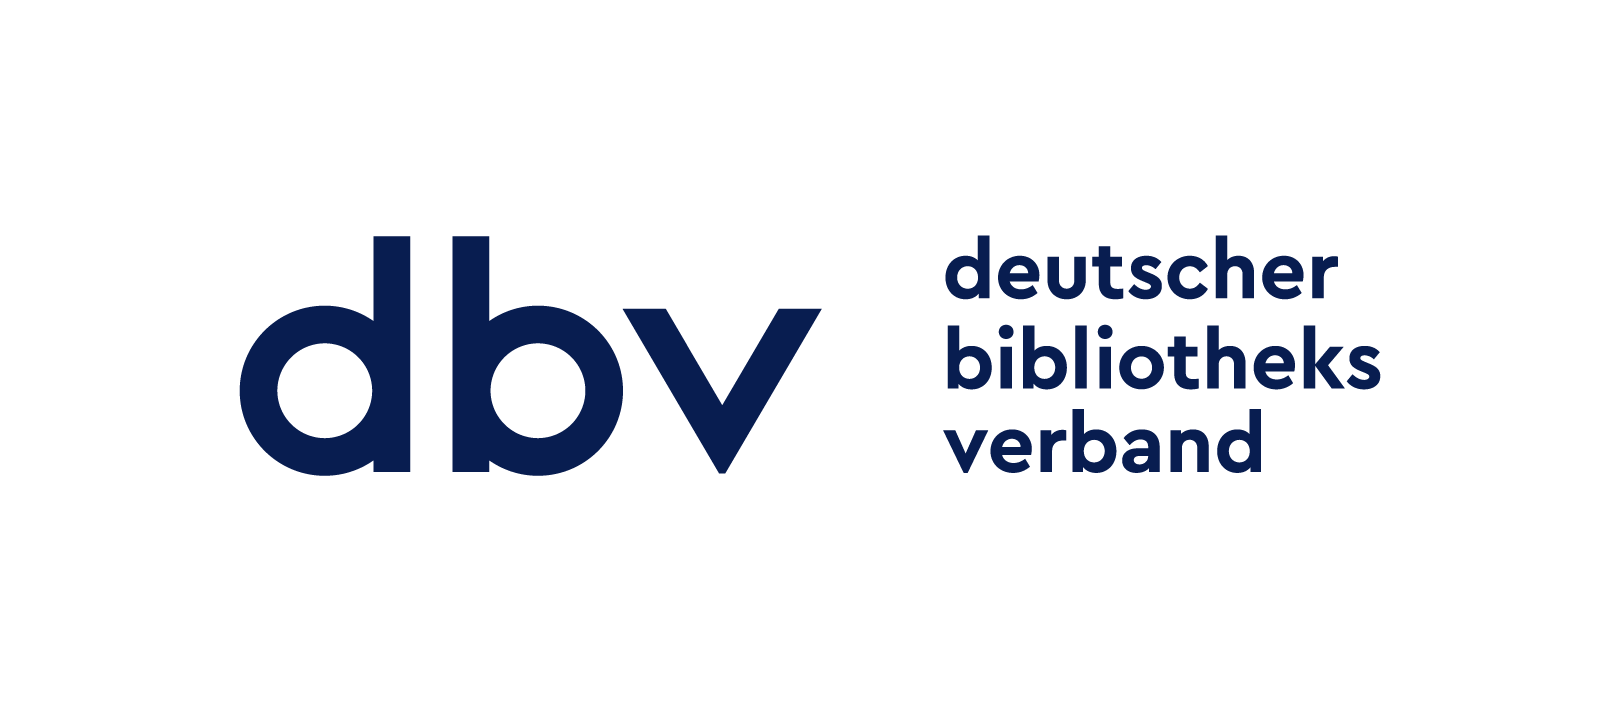 Logo dbv mit integrierter Verlinkung